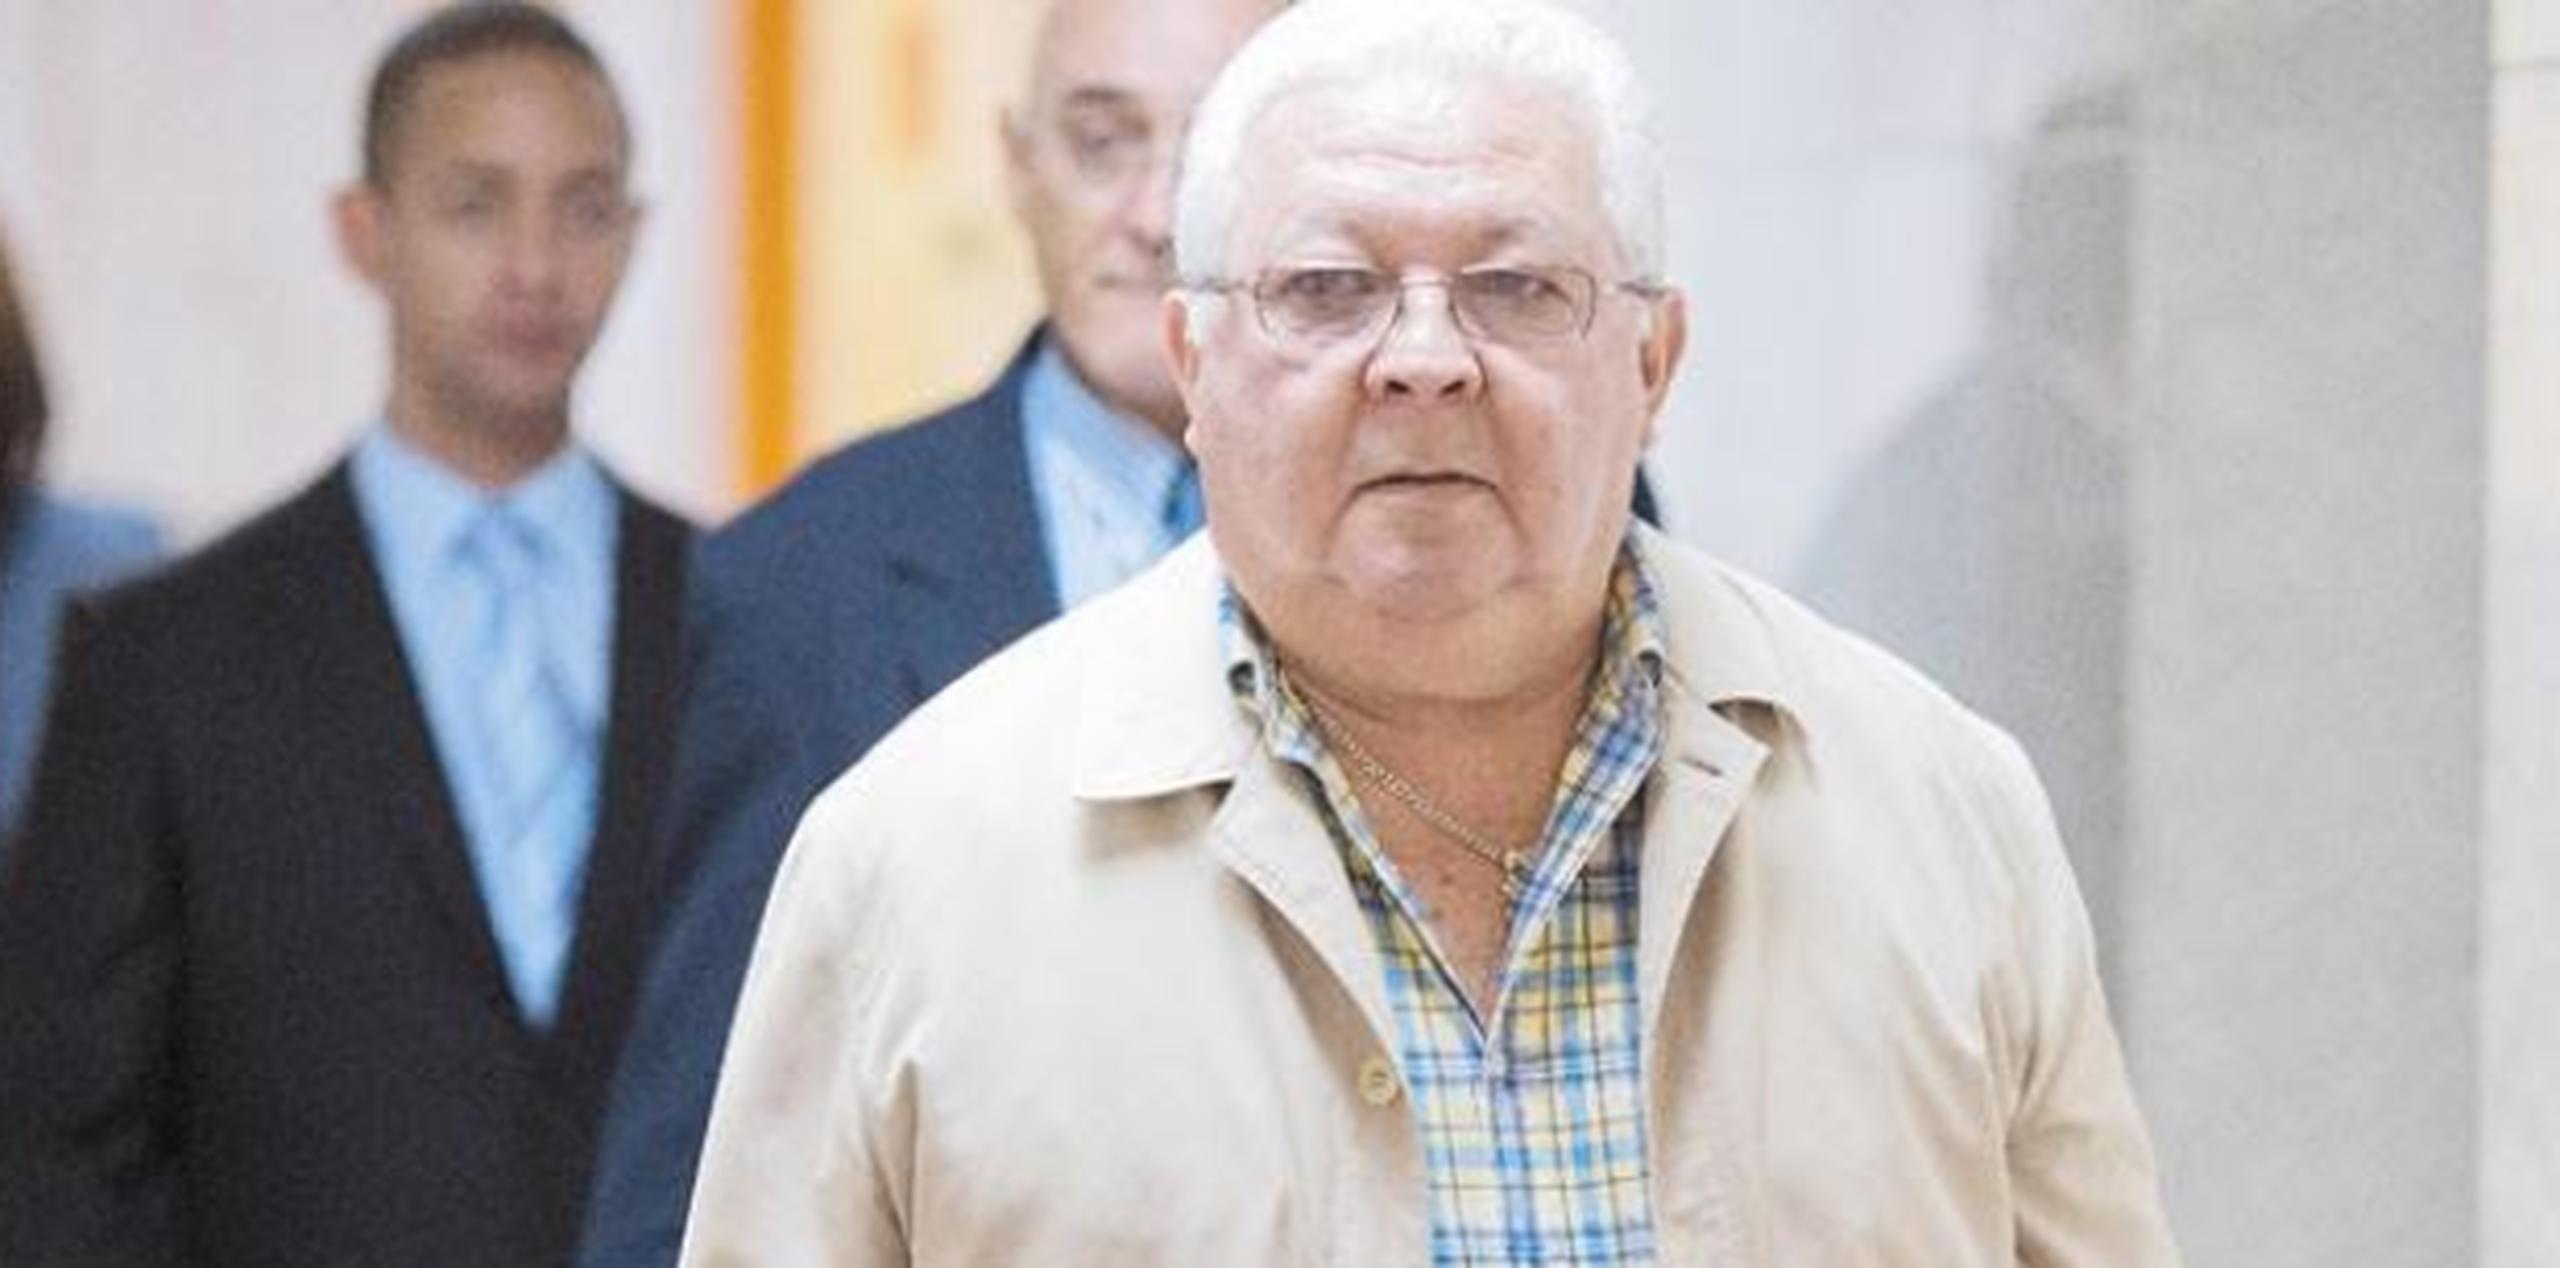 López Nieves, de 66 años, fue acusado en diciembre de 2013 de 26 cargos de malversación de fondos públicos. (Archivo)